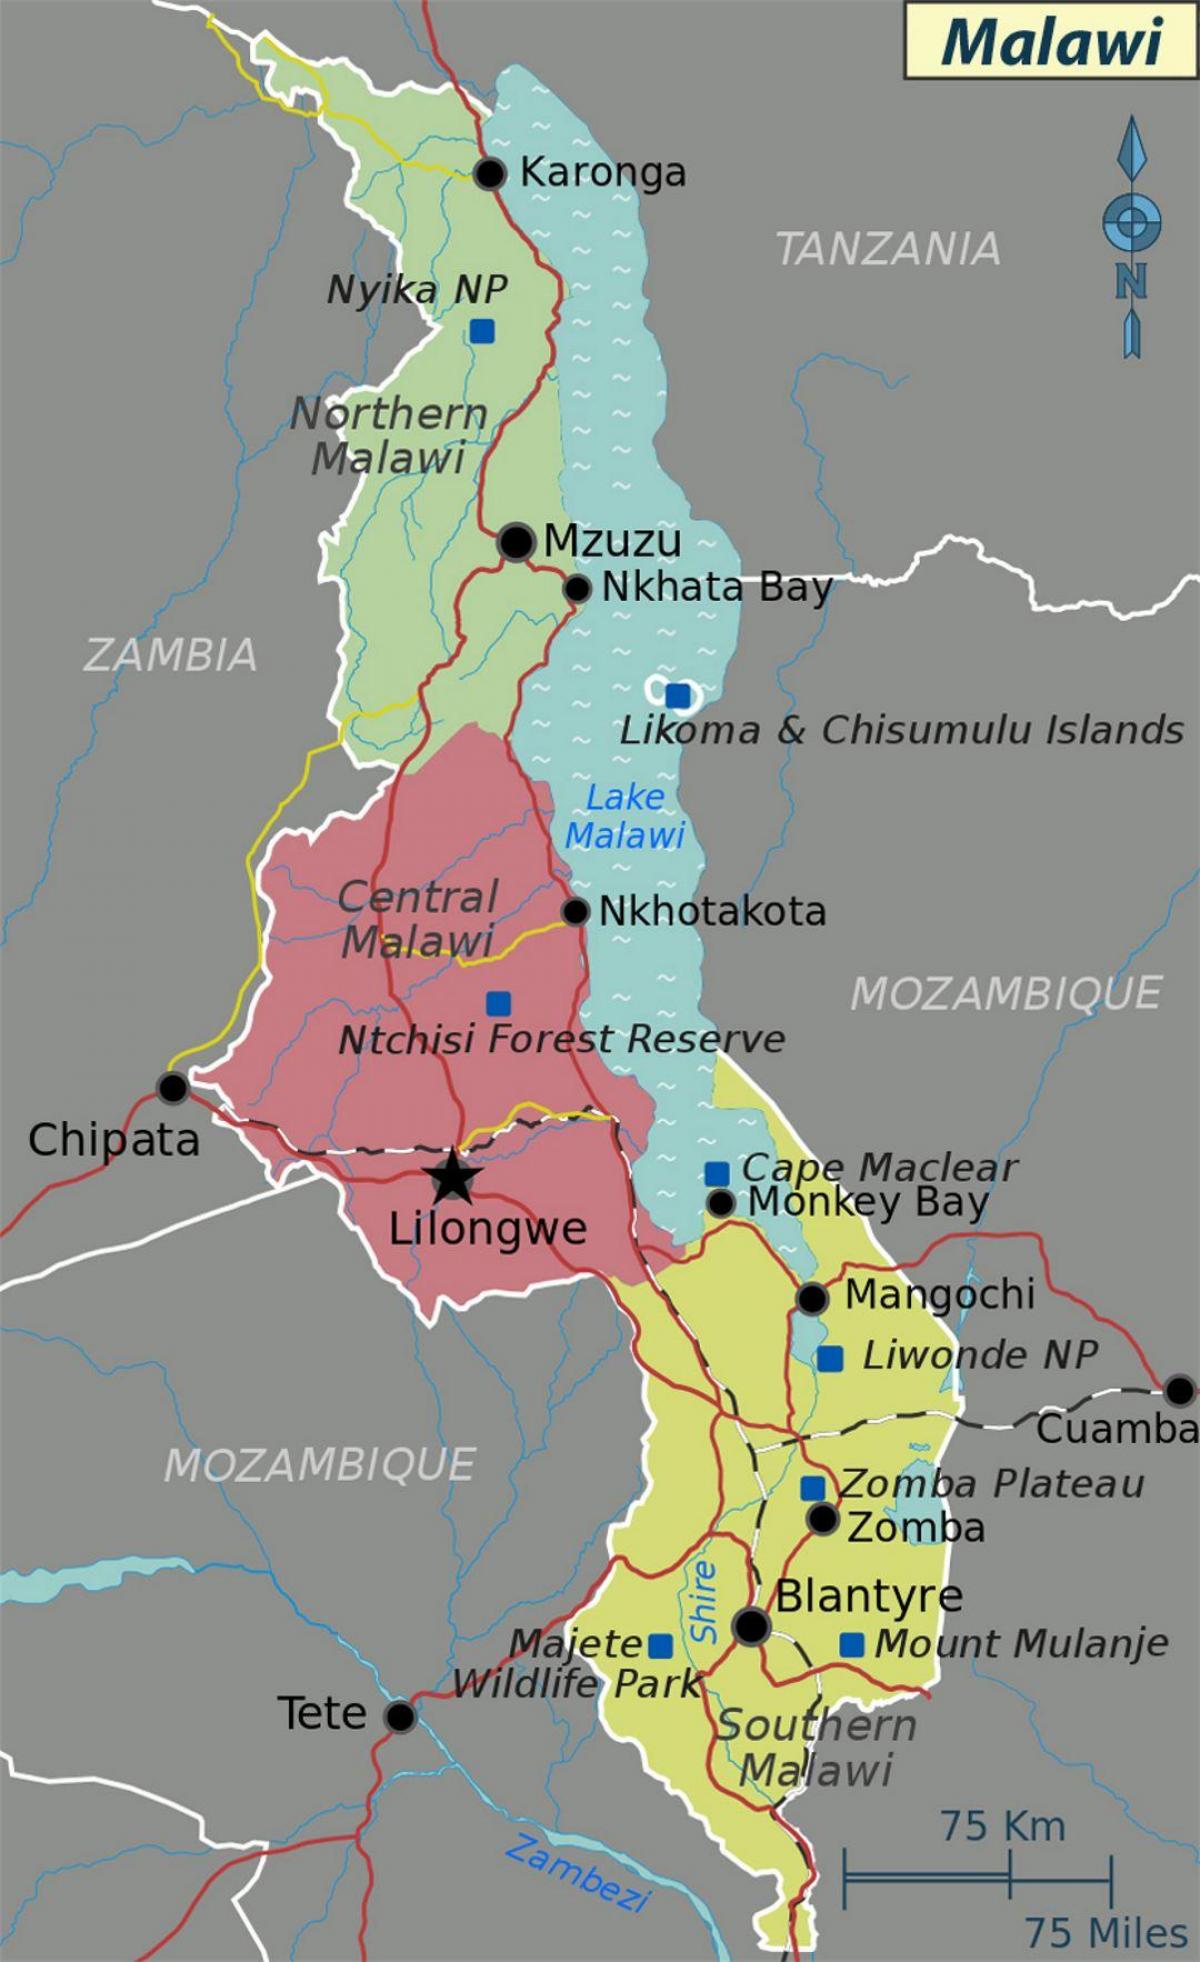 מפה של אגם מלאווי אפריקה